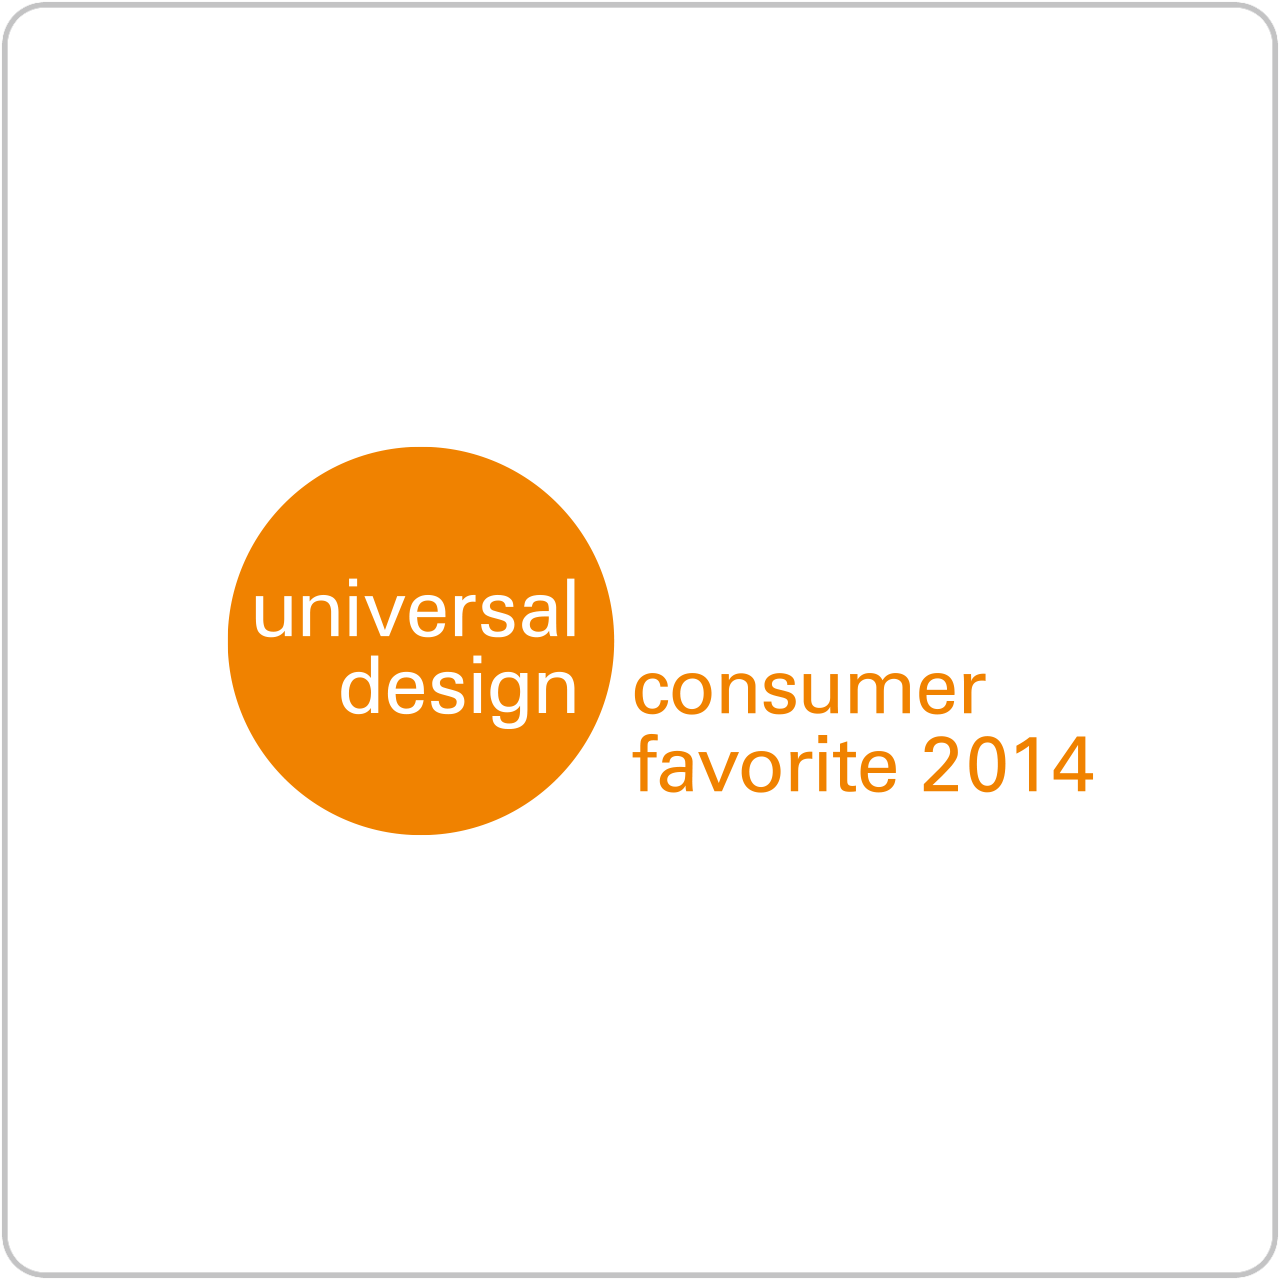 universal design consumer favorite 2014